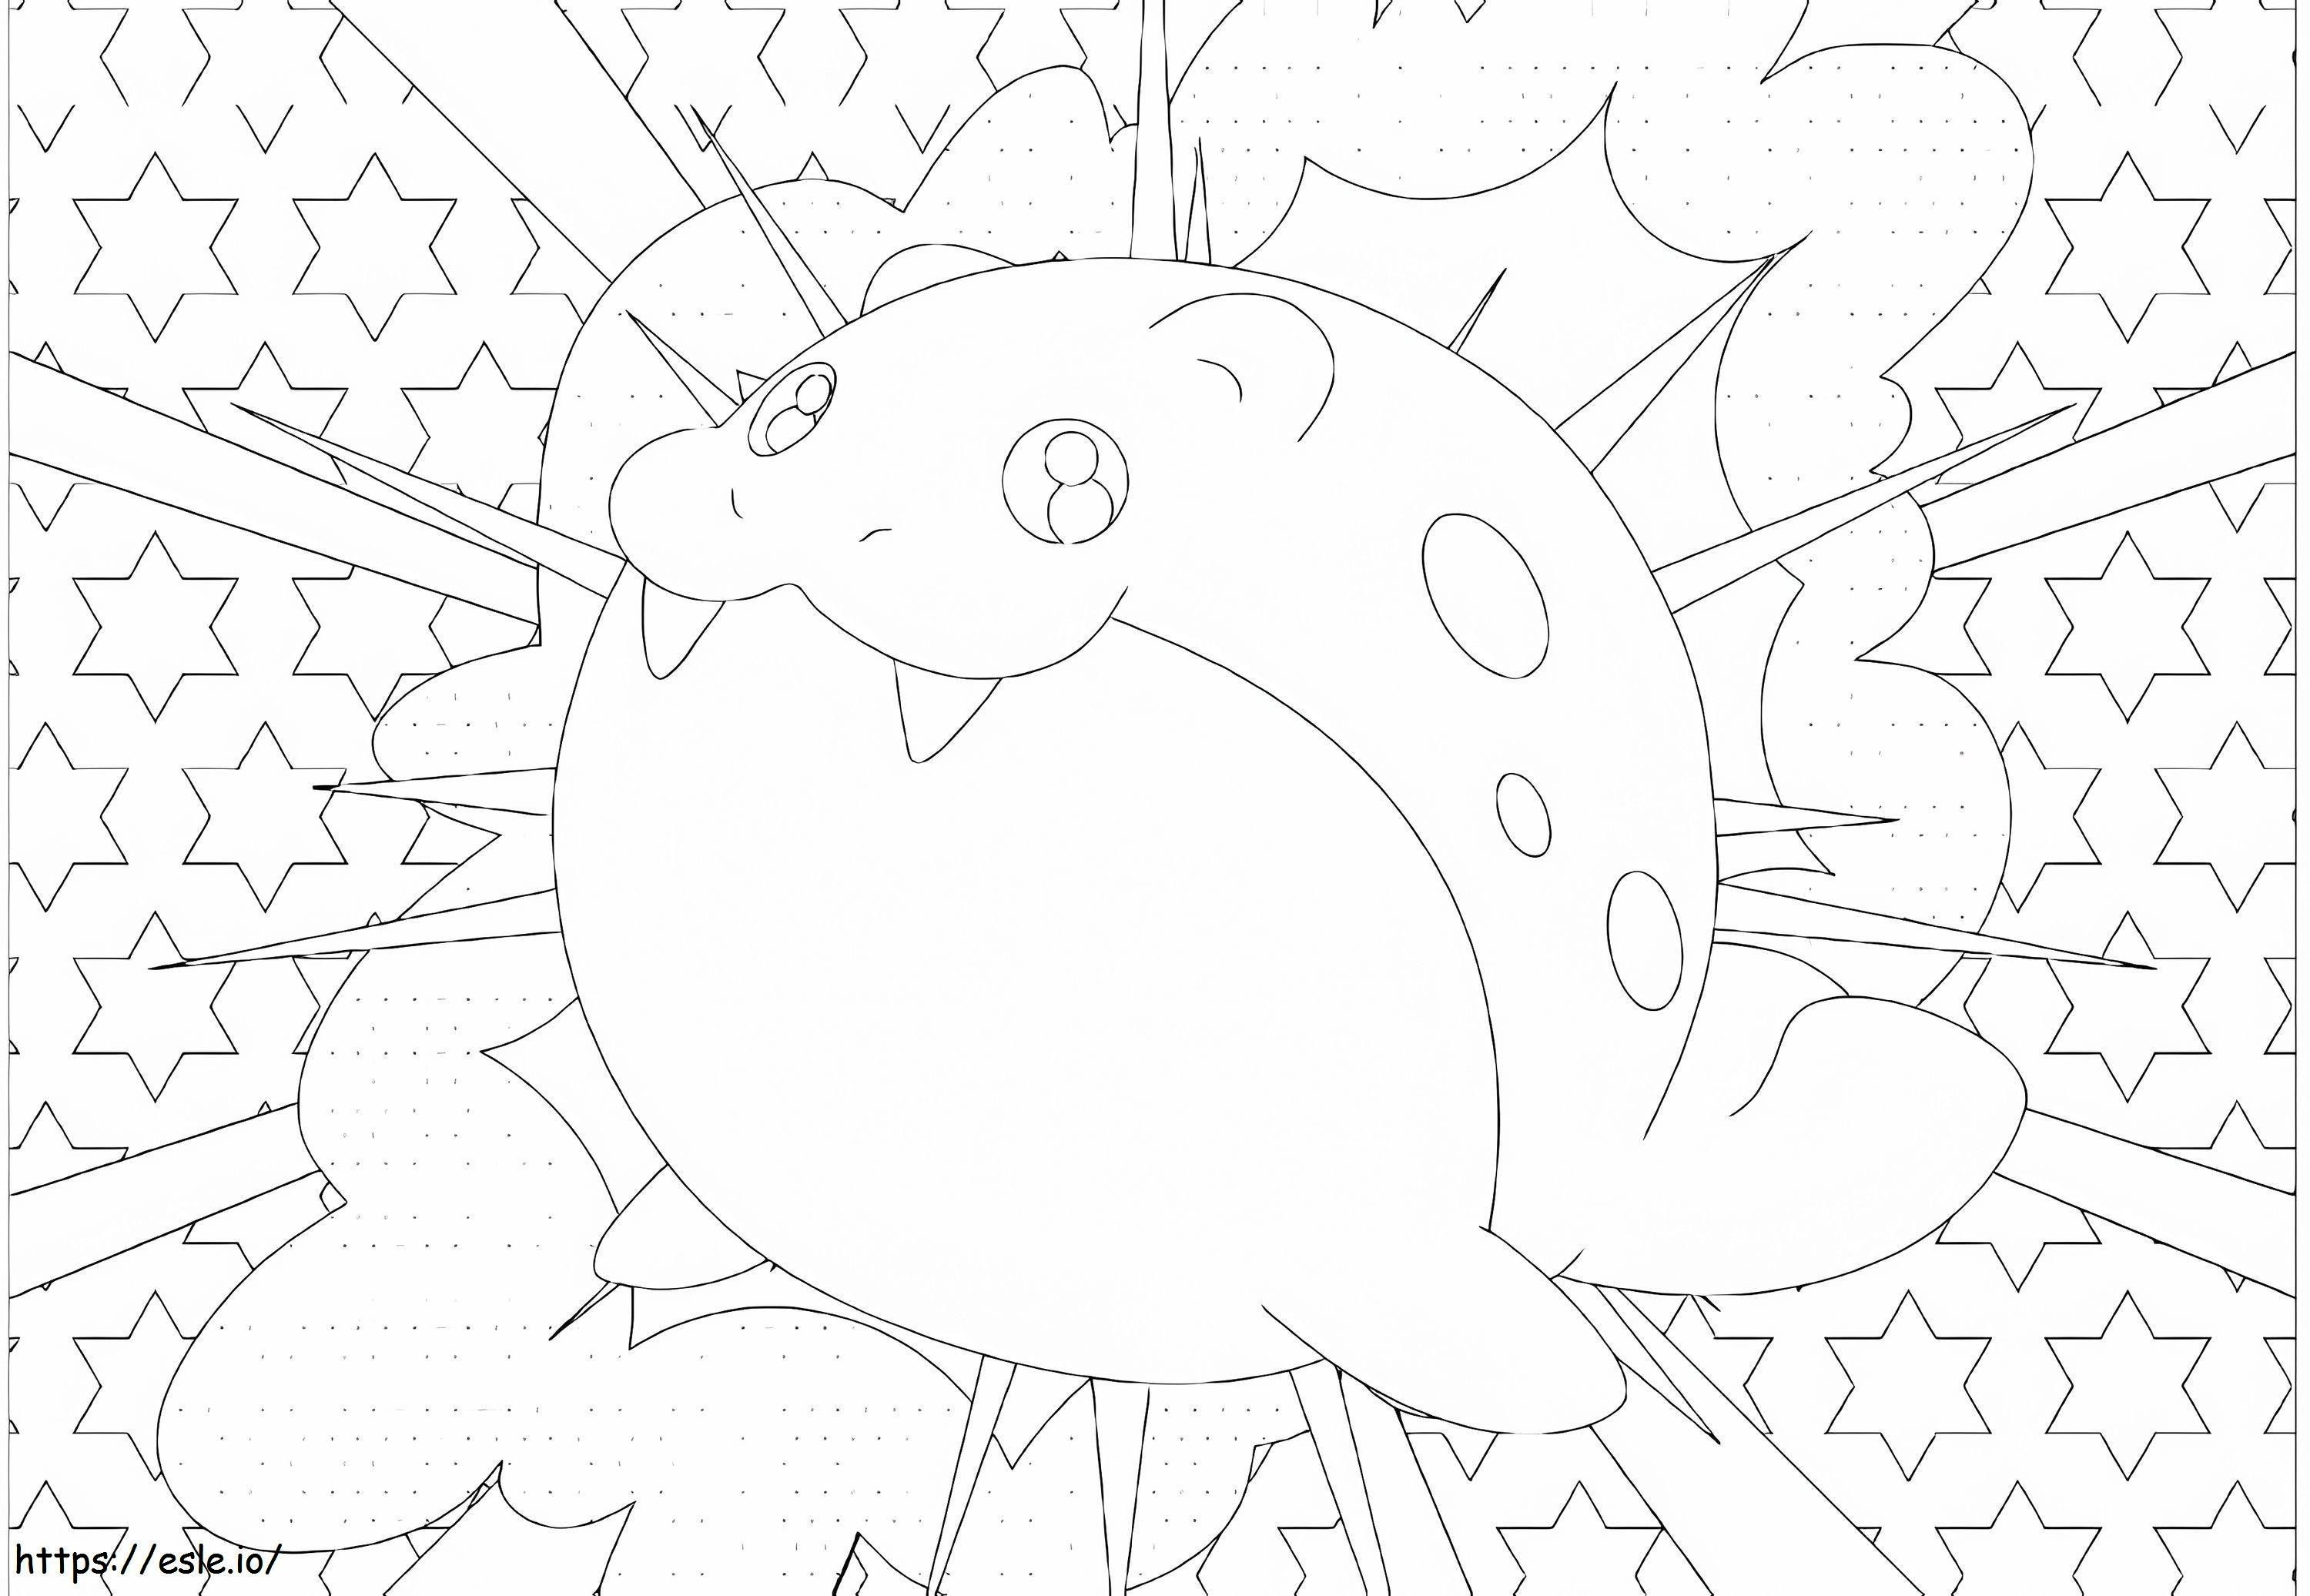 Coloriage Spheal Pokémon 1 à imprimer dessin